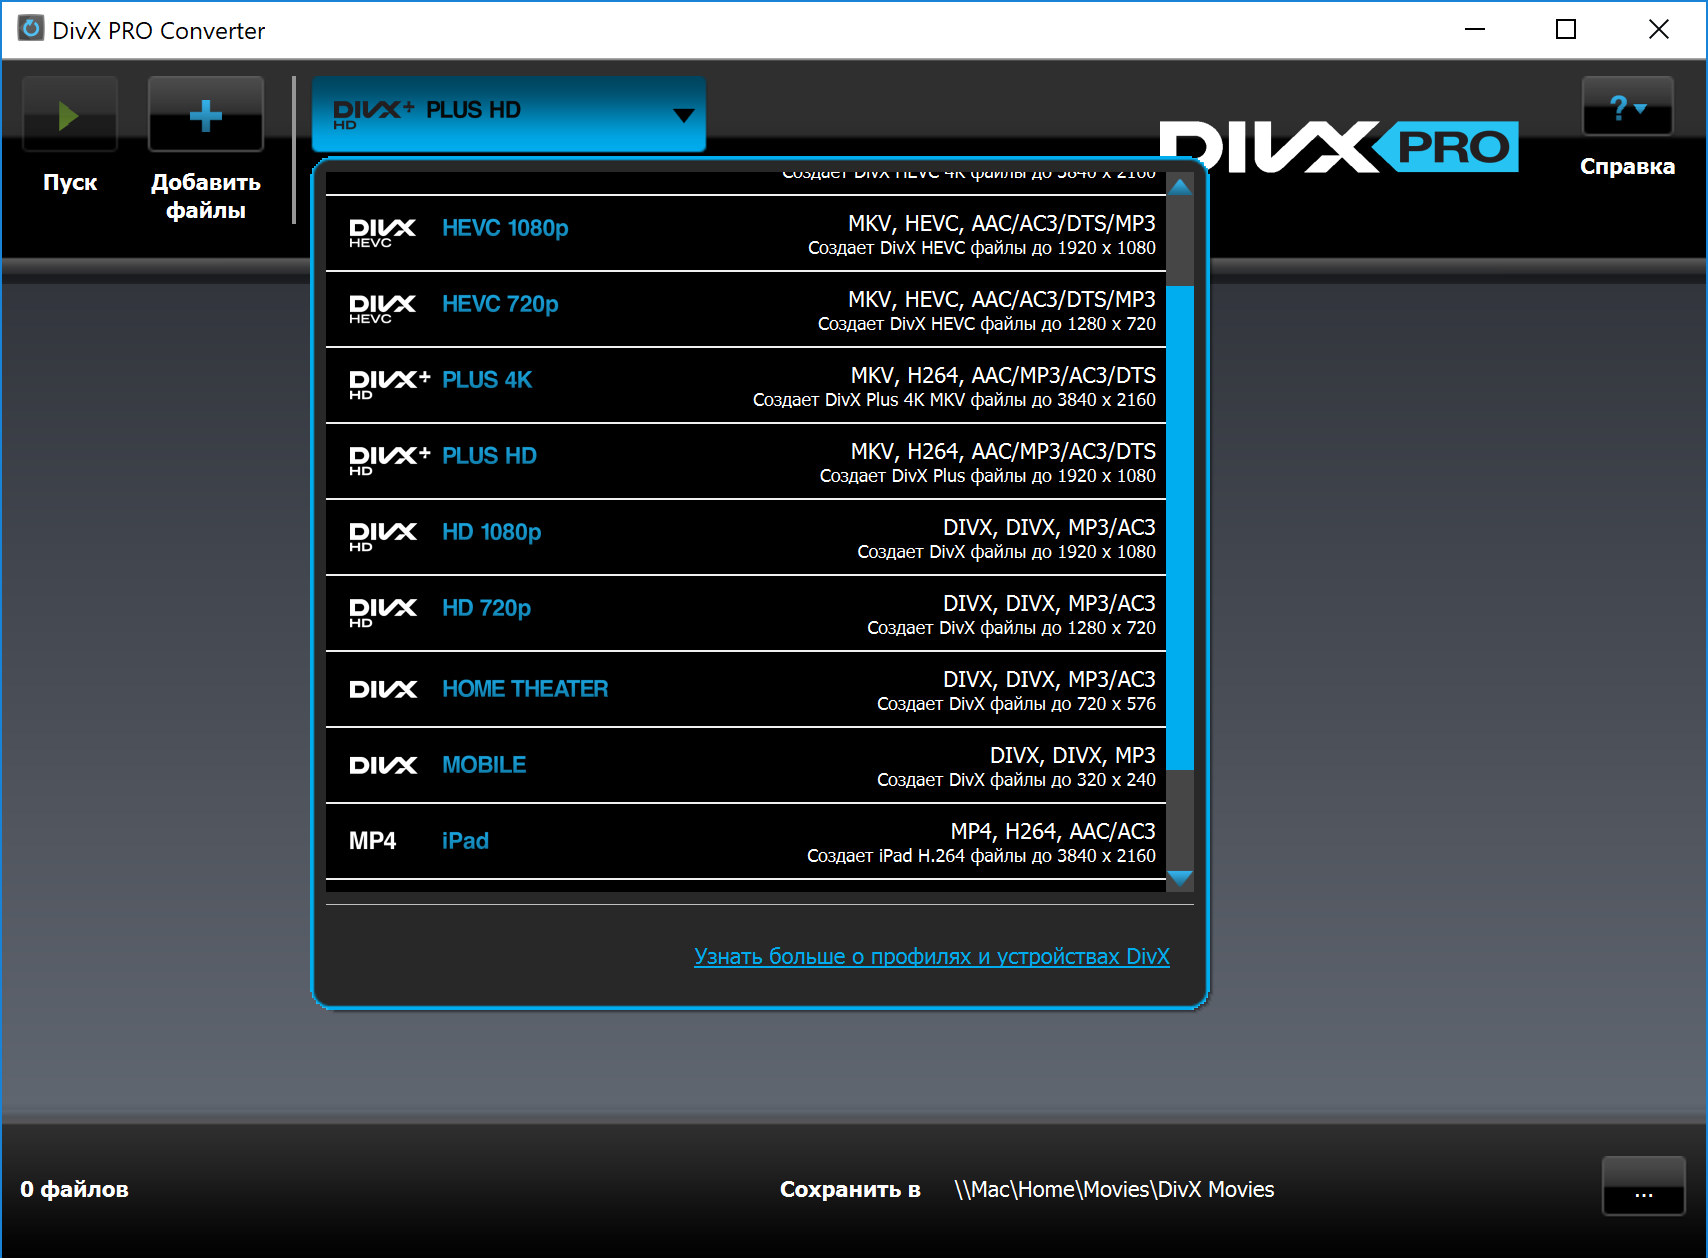 DivX Pro 10.10.0 for apple instal free